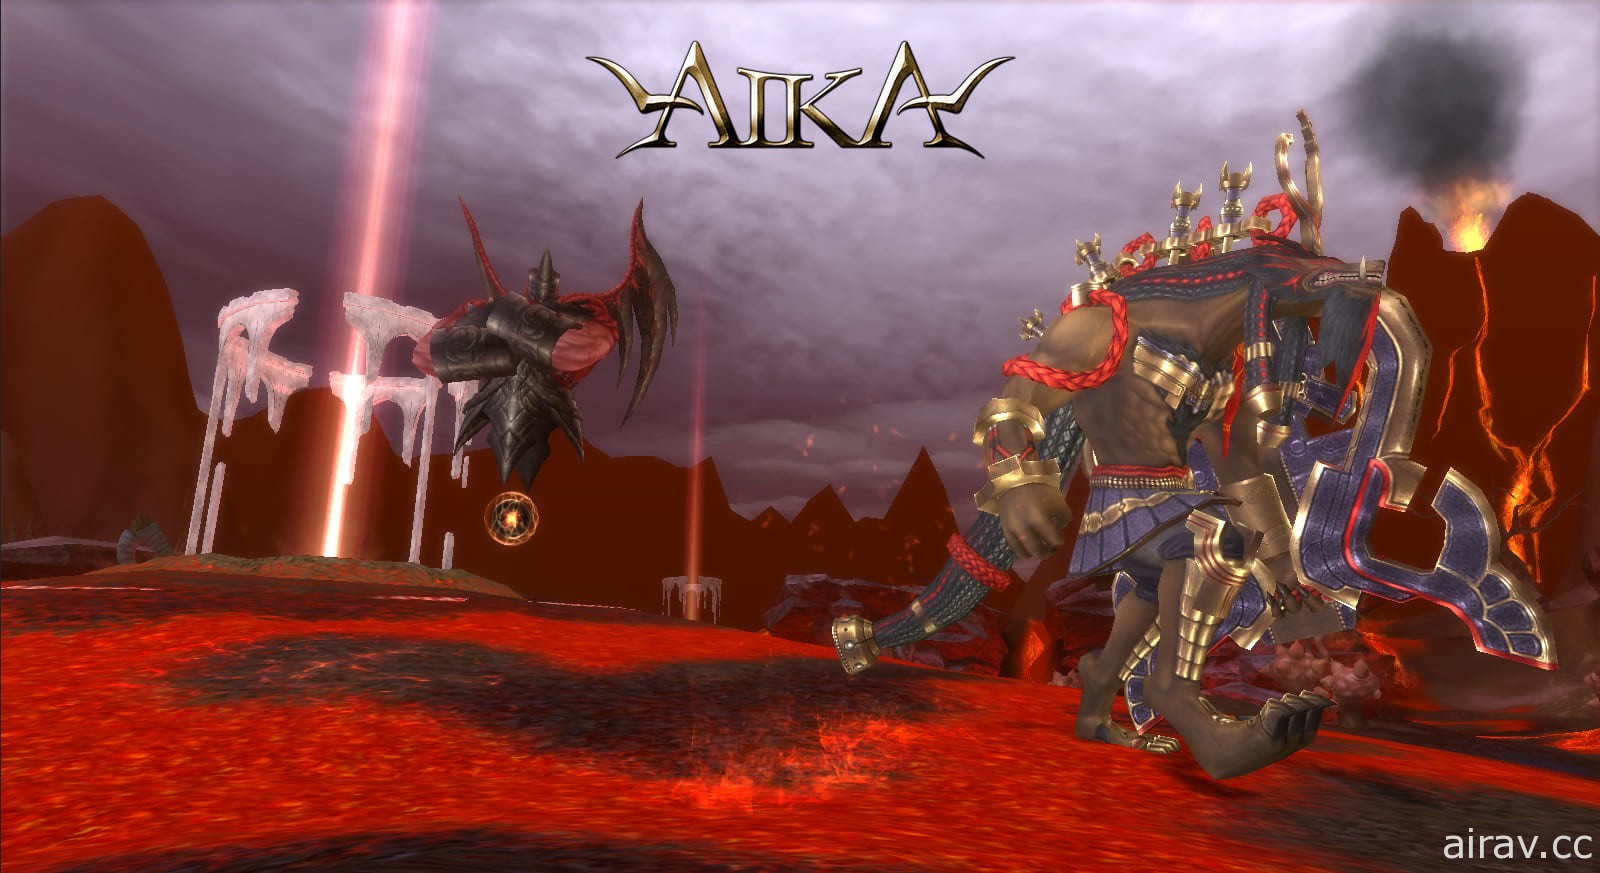 《AIKA Online》釋出多項新內容 全新 PvP 模式「雷歐普爭奪戰」登場